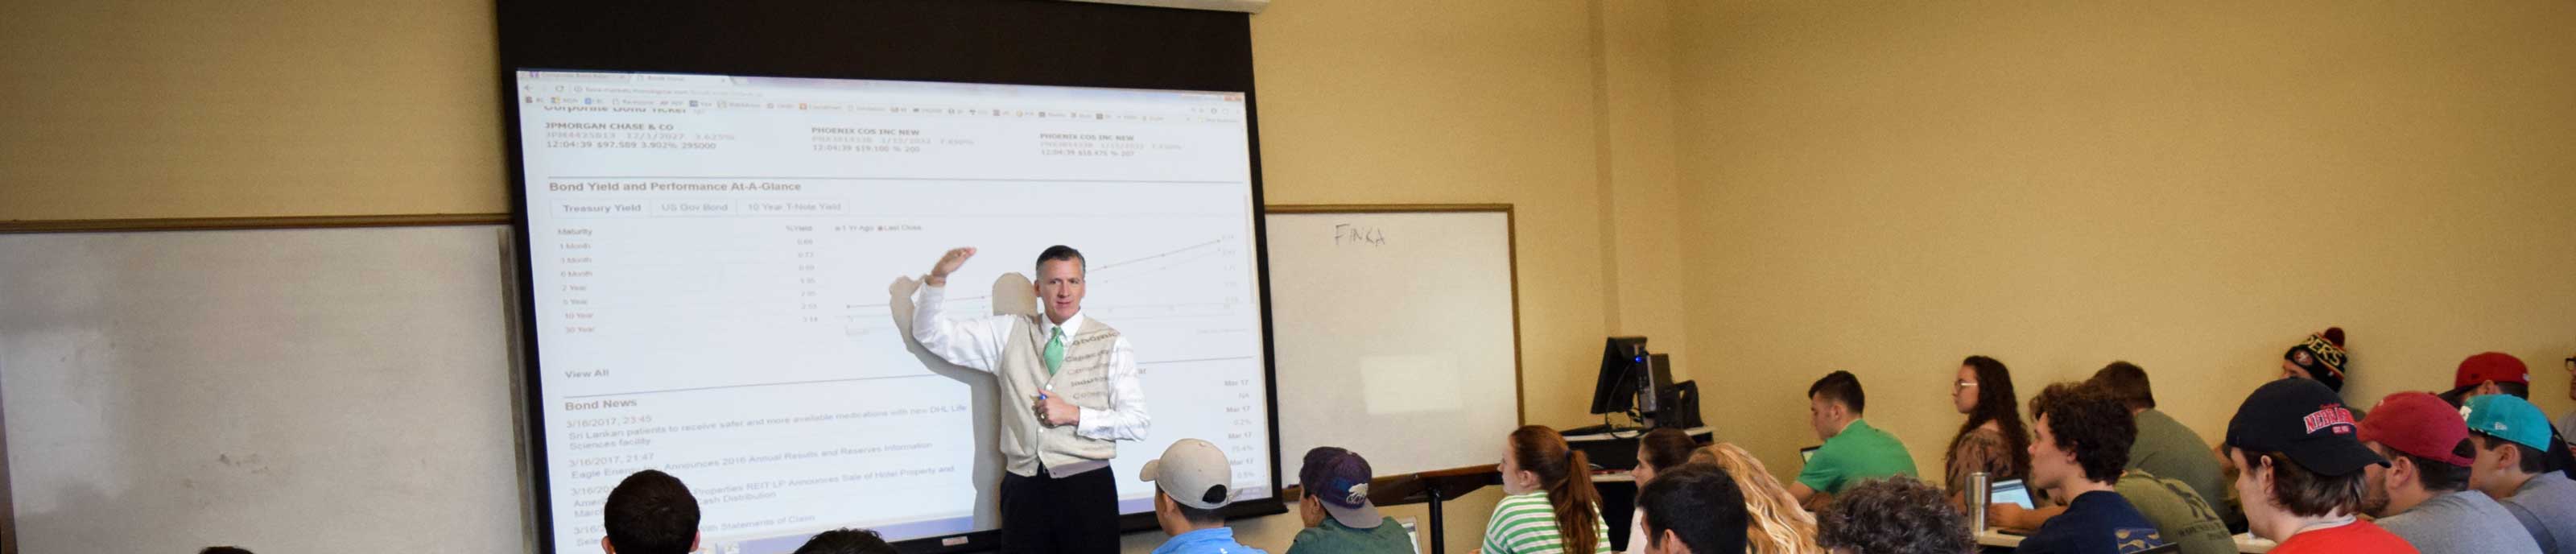 Dr. Michael King teaches class